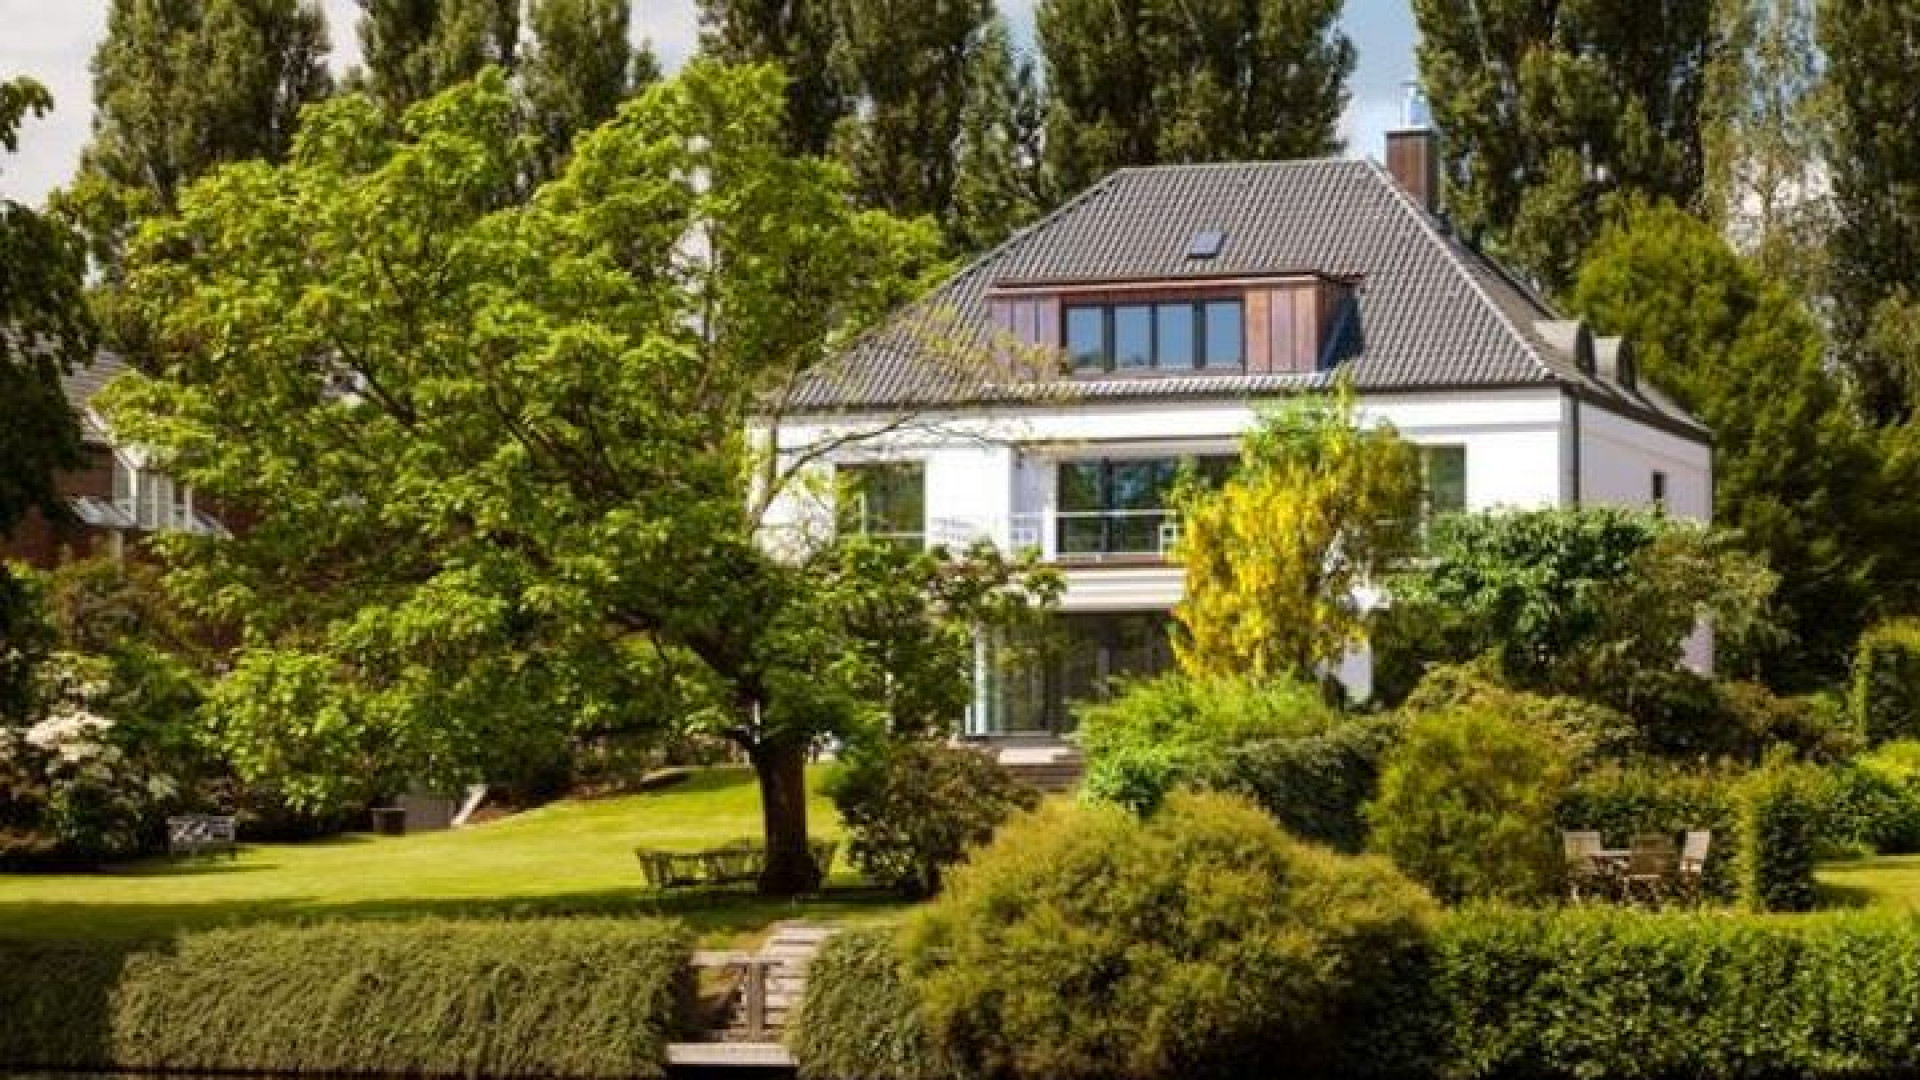 Huurprijs Hamburgse villa Sabia verlaagd. Zie foto's 7